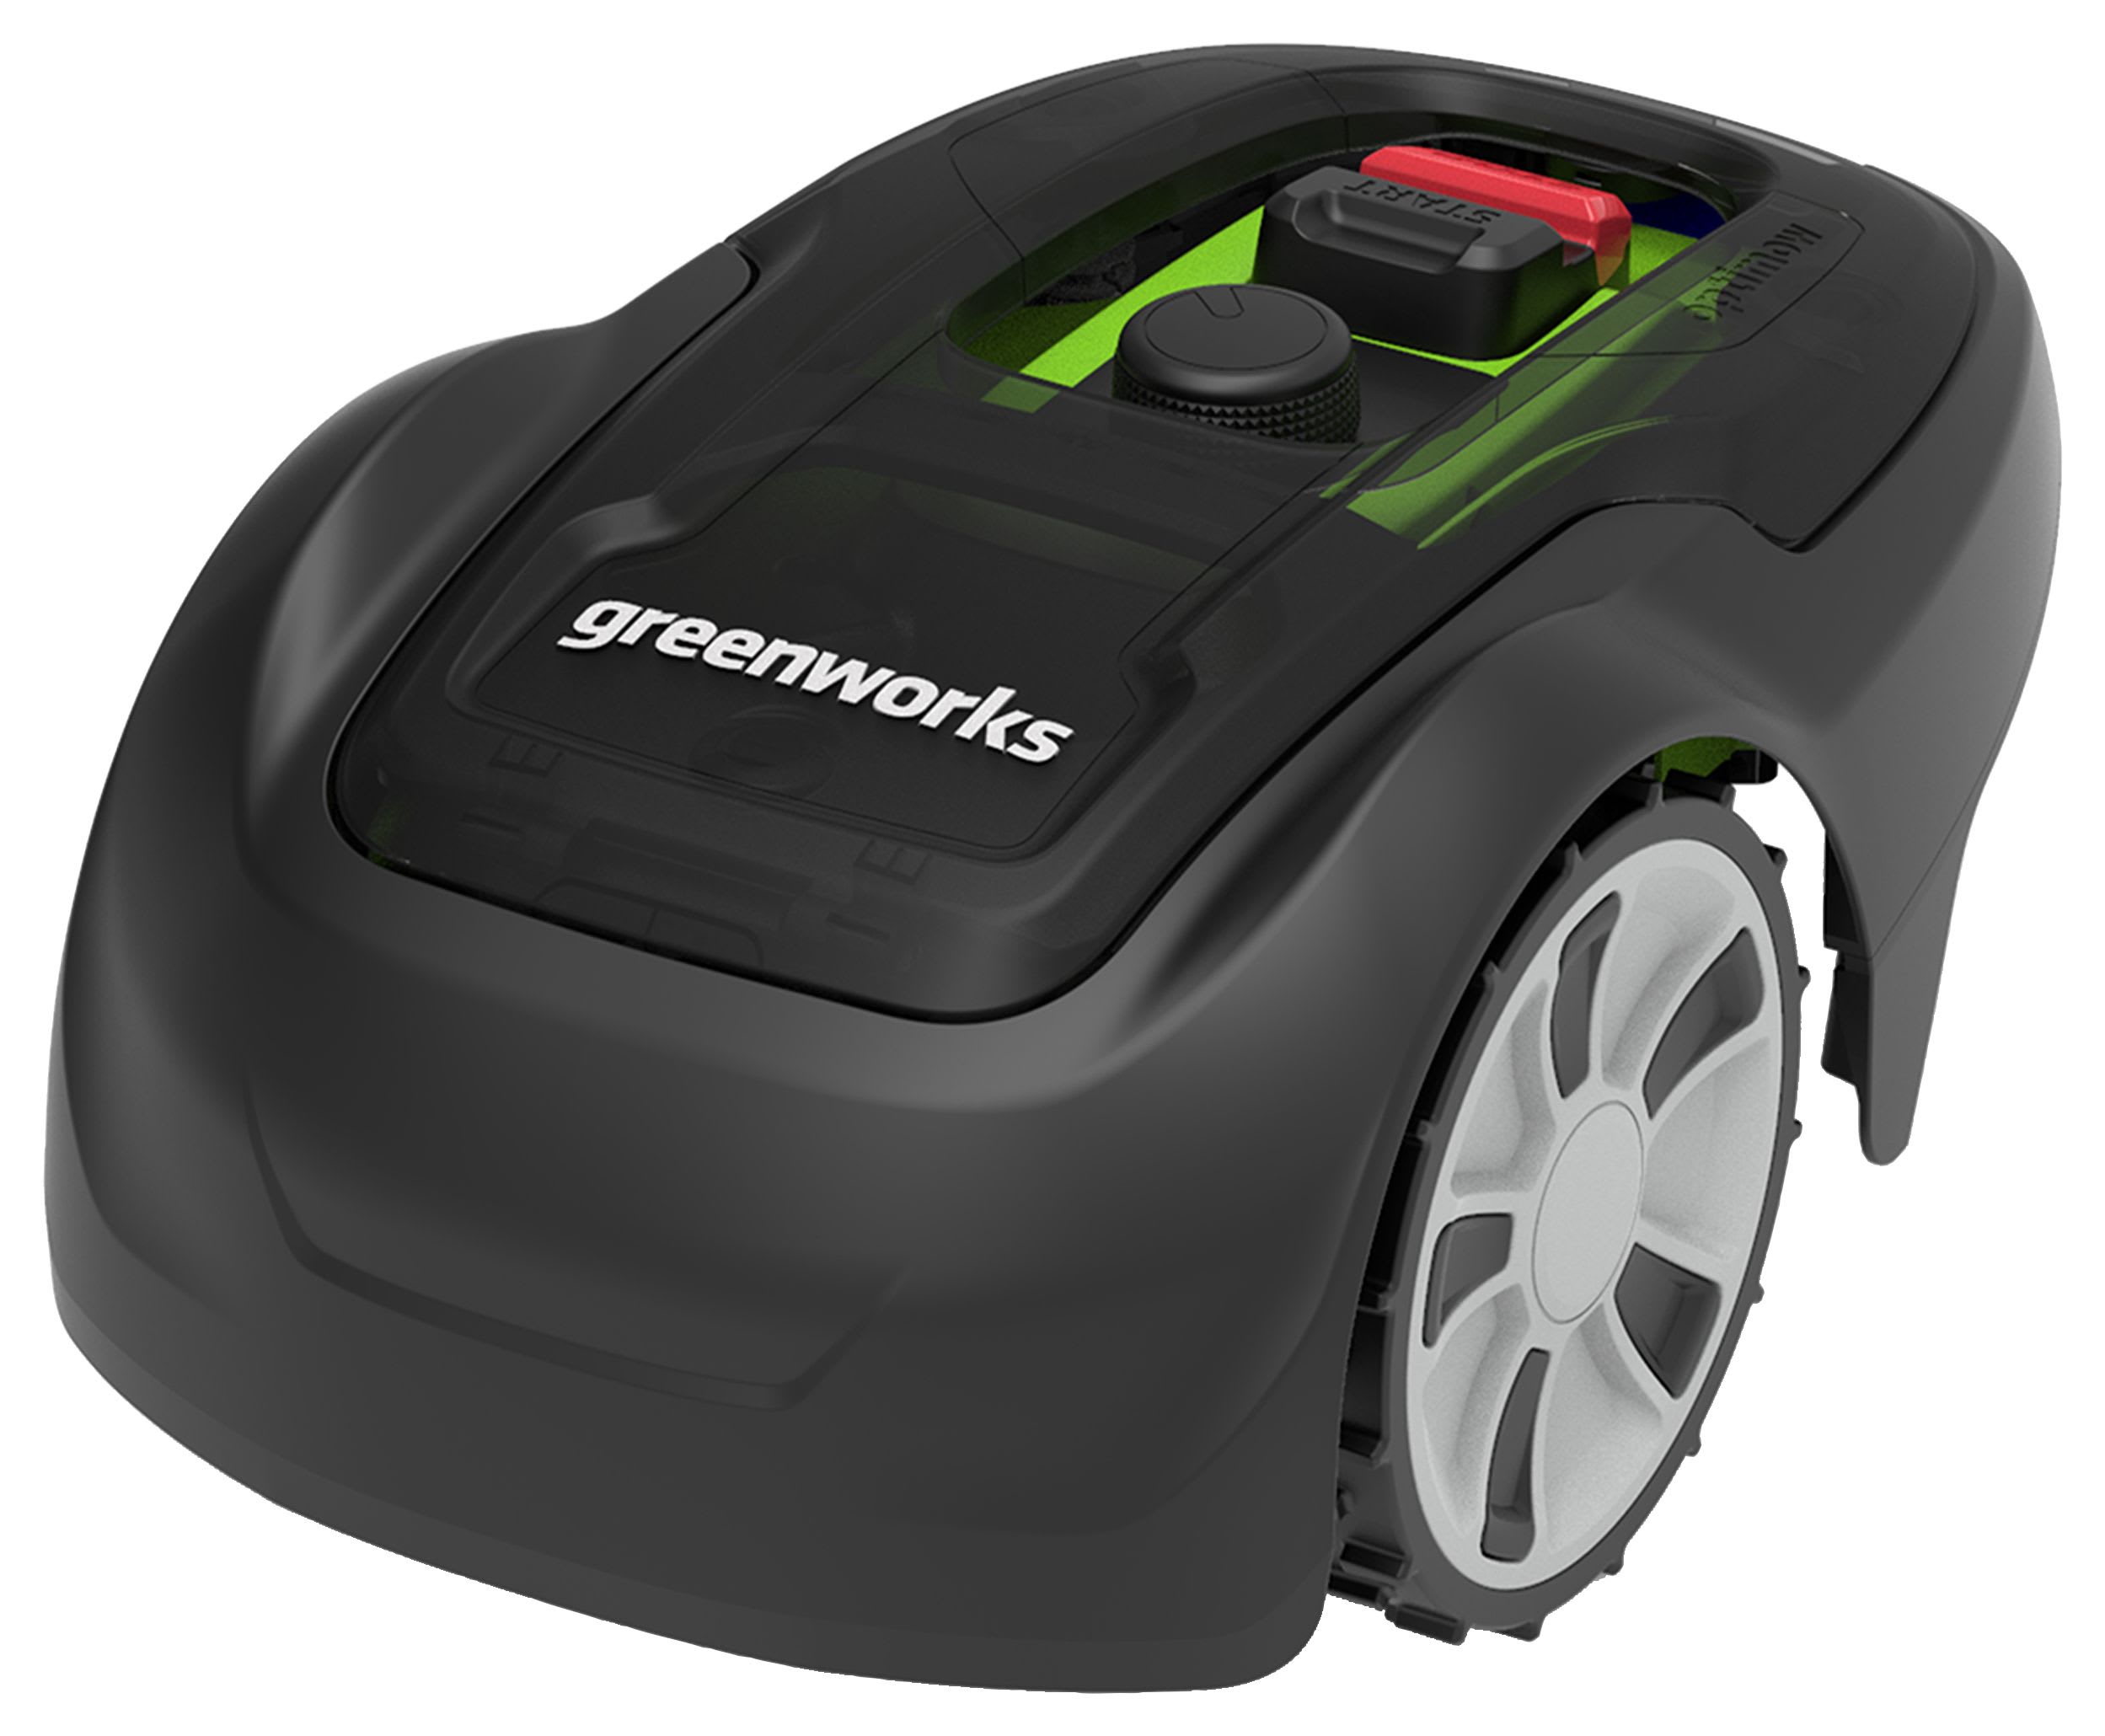 Greenworks Robotic Lightweight Lawn Mower - 550m˛